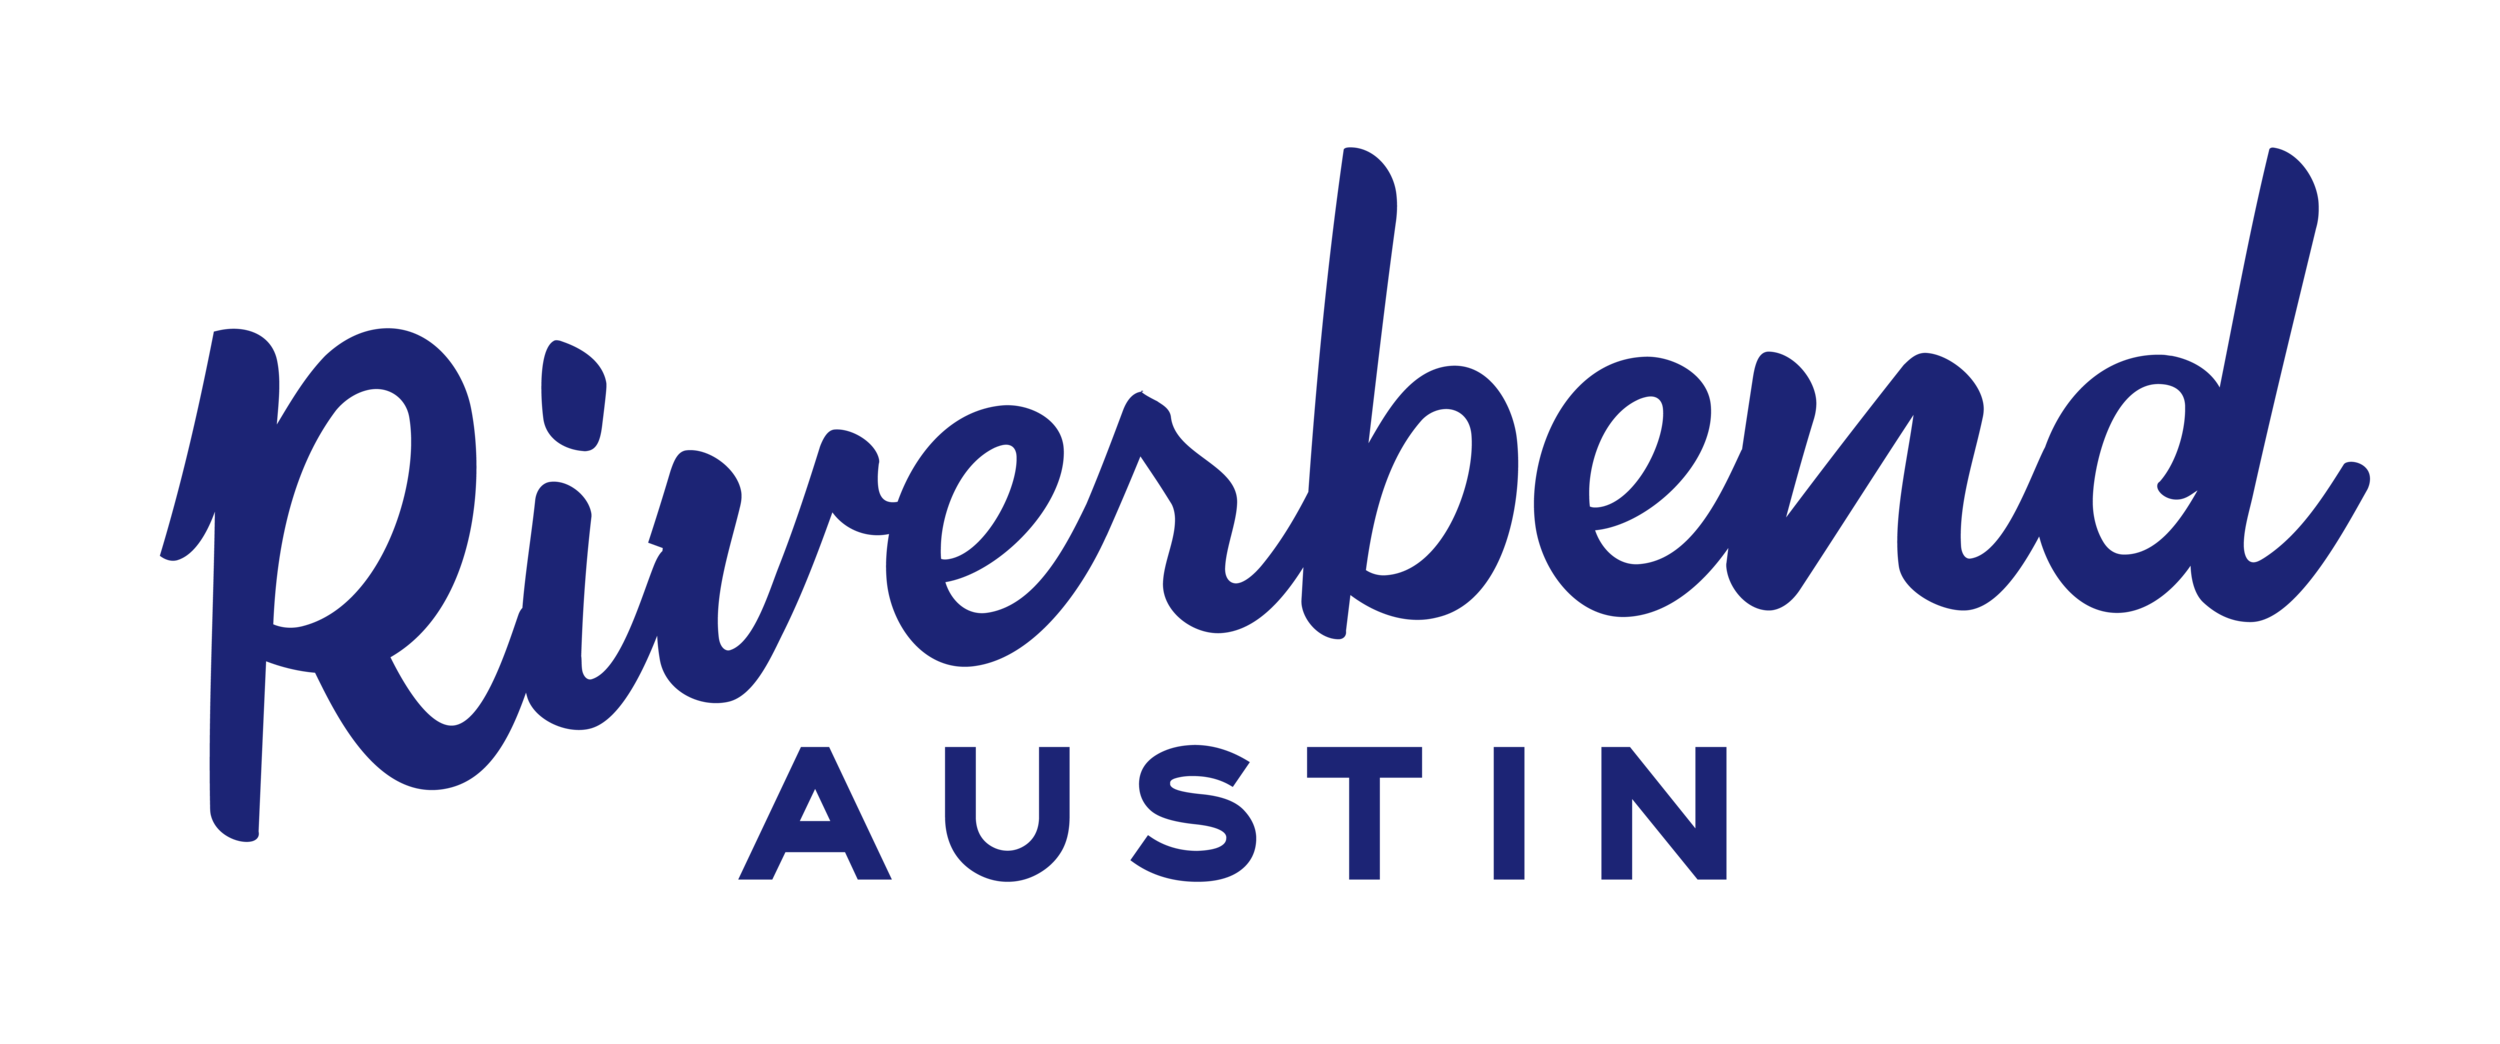 Riverbend Austin